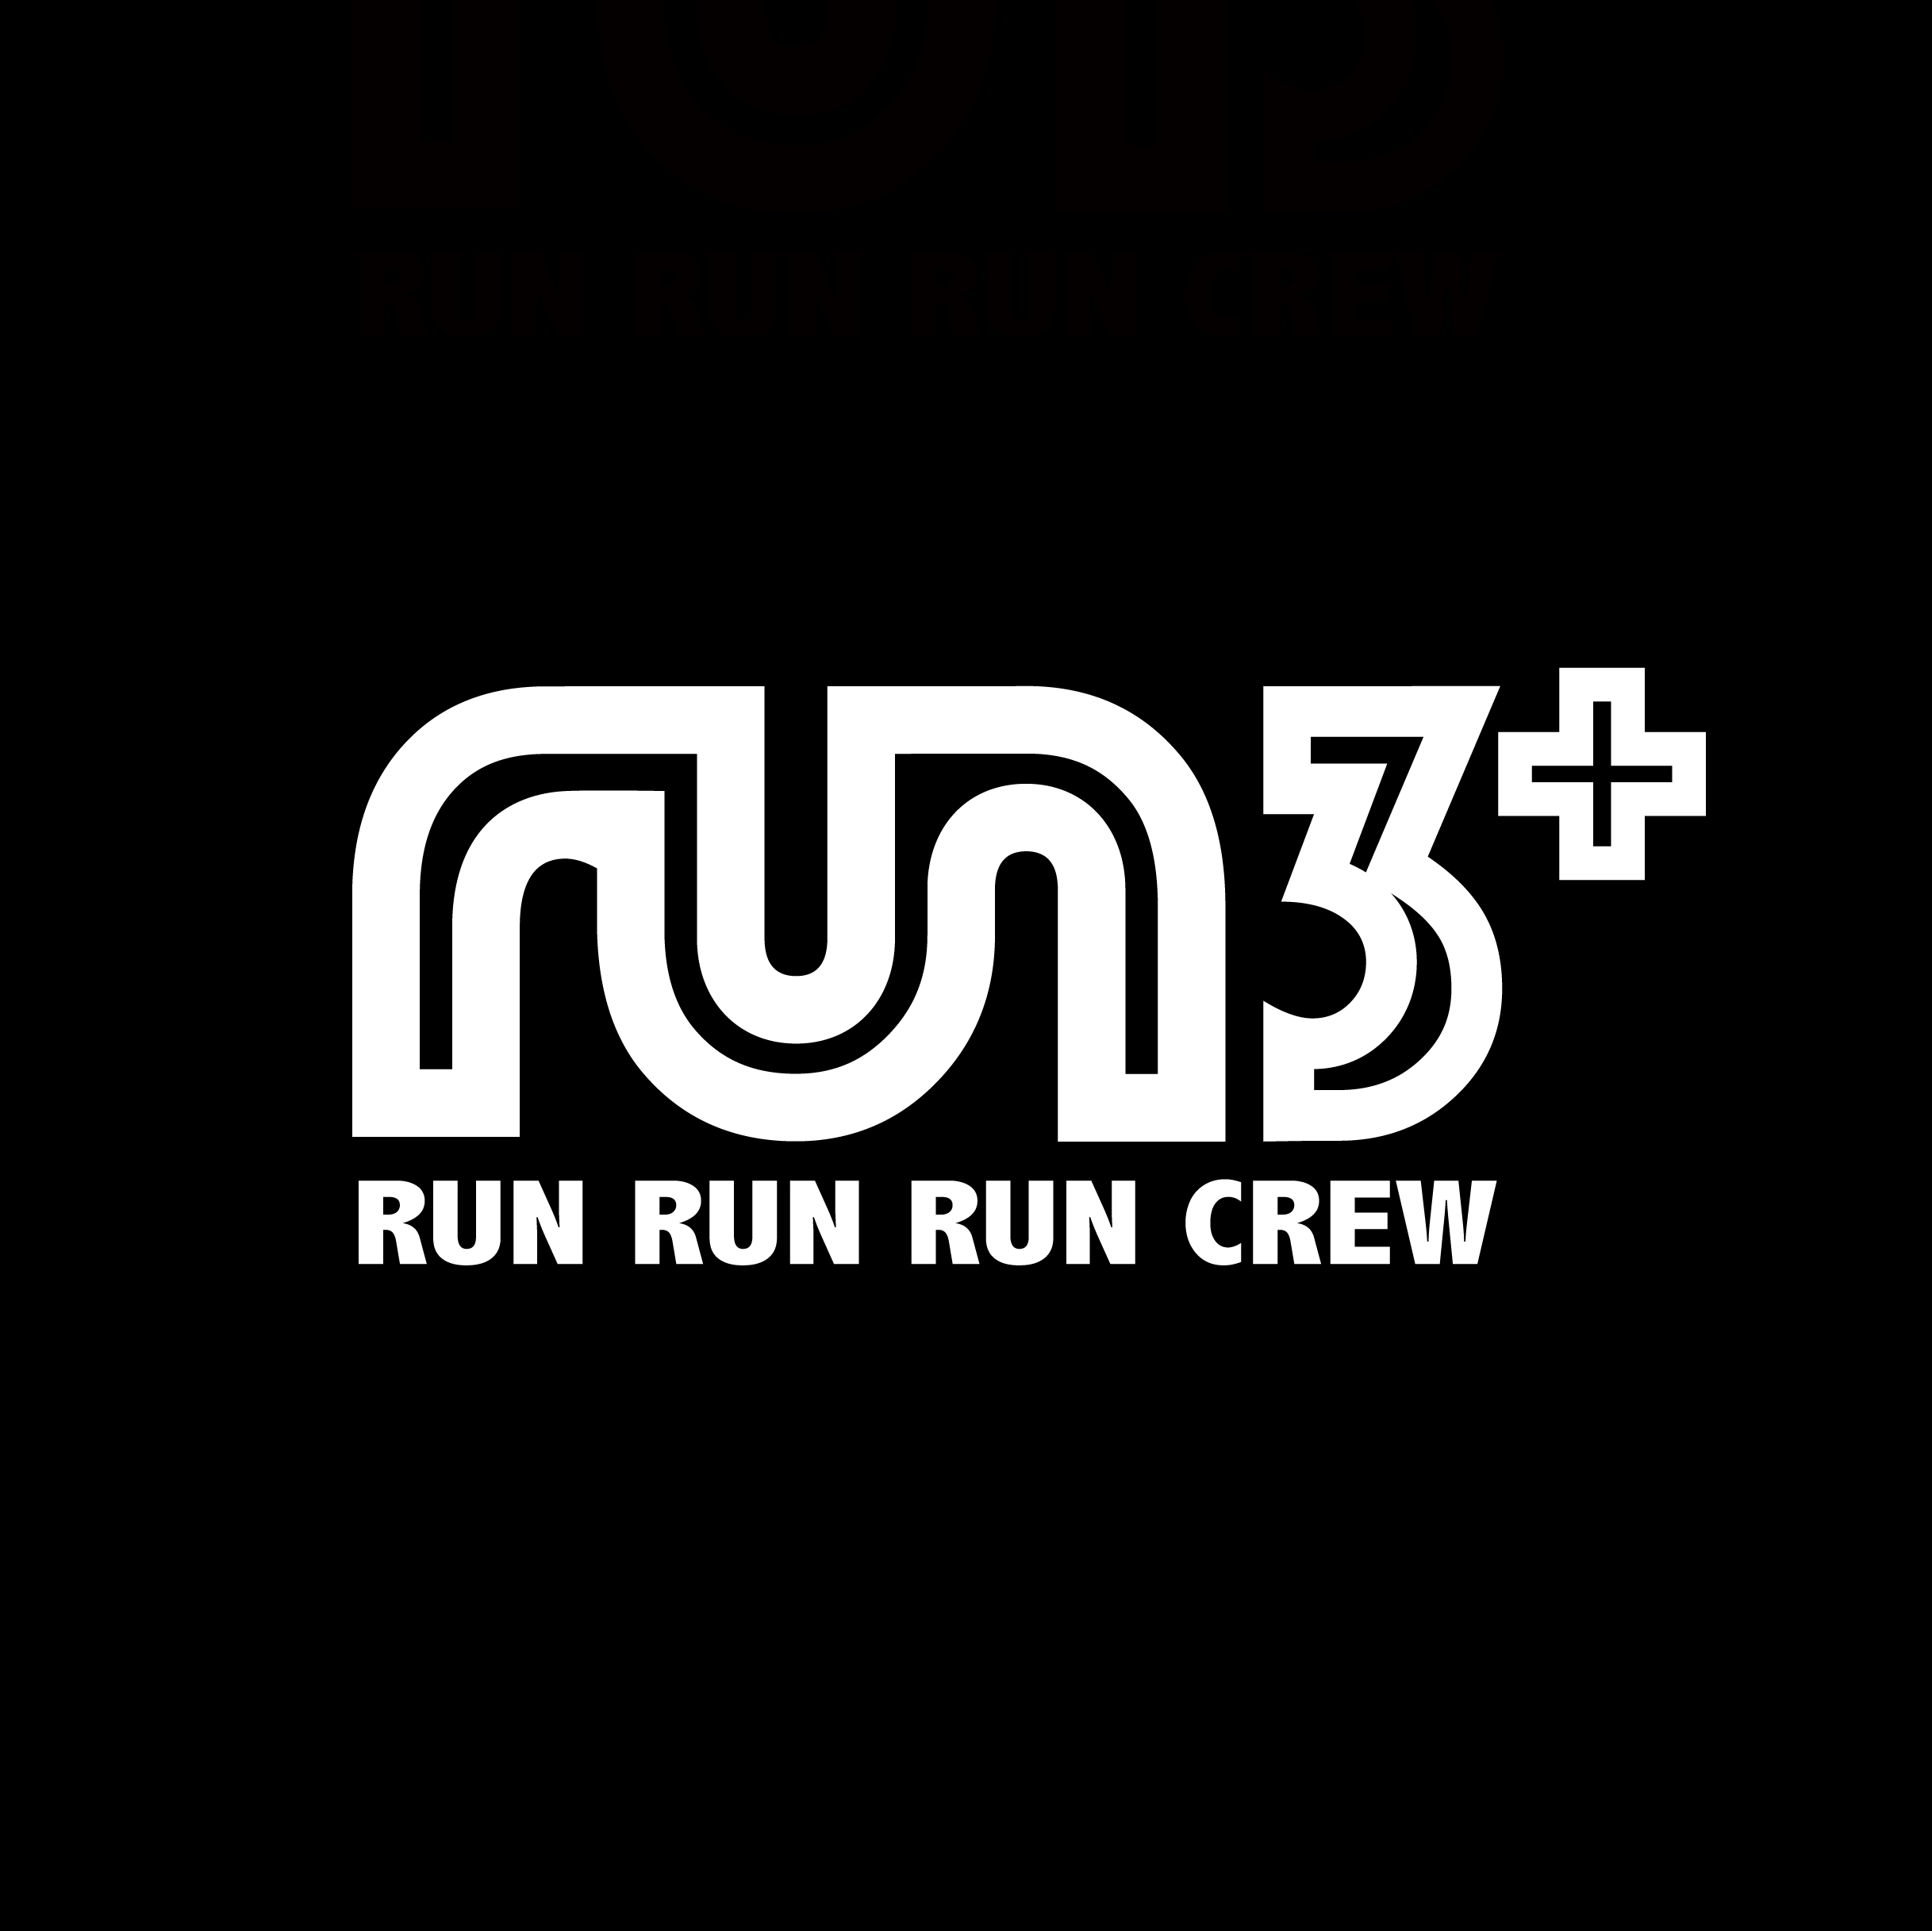 run3